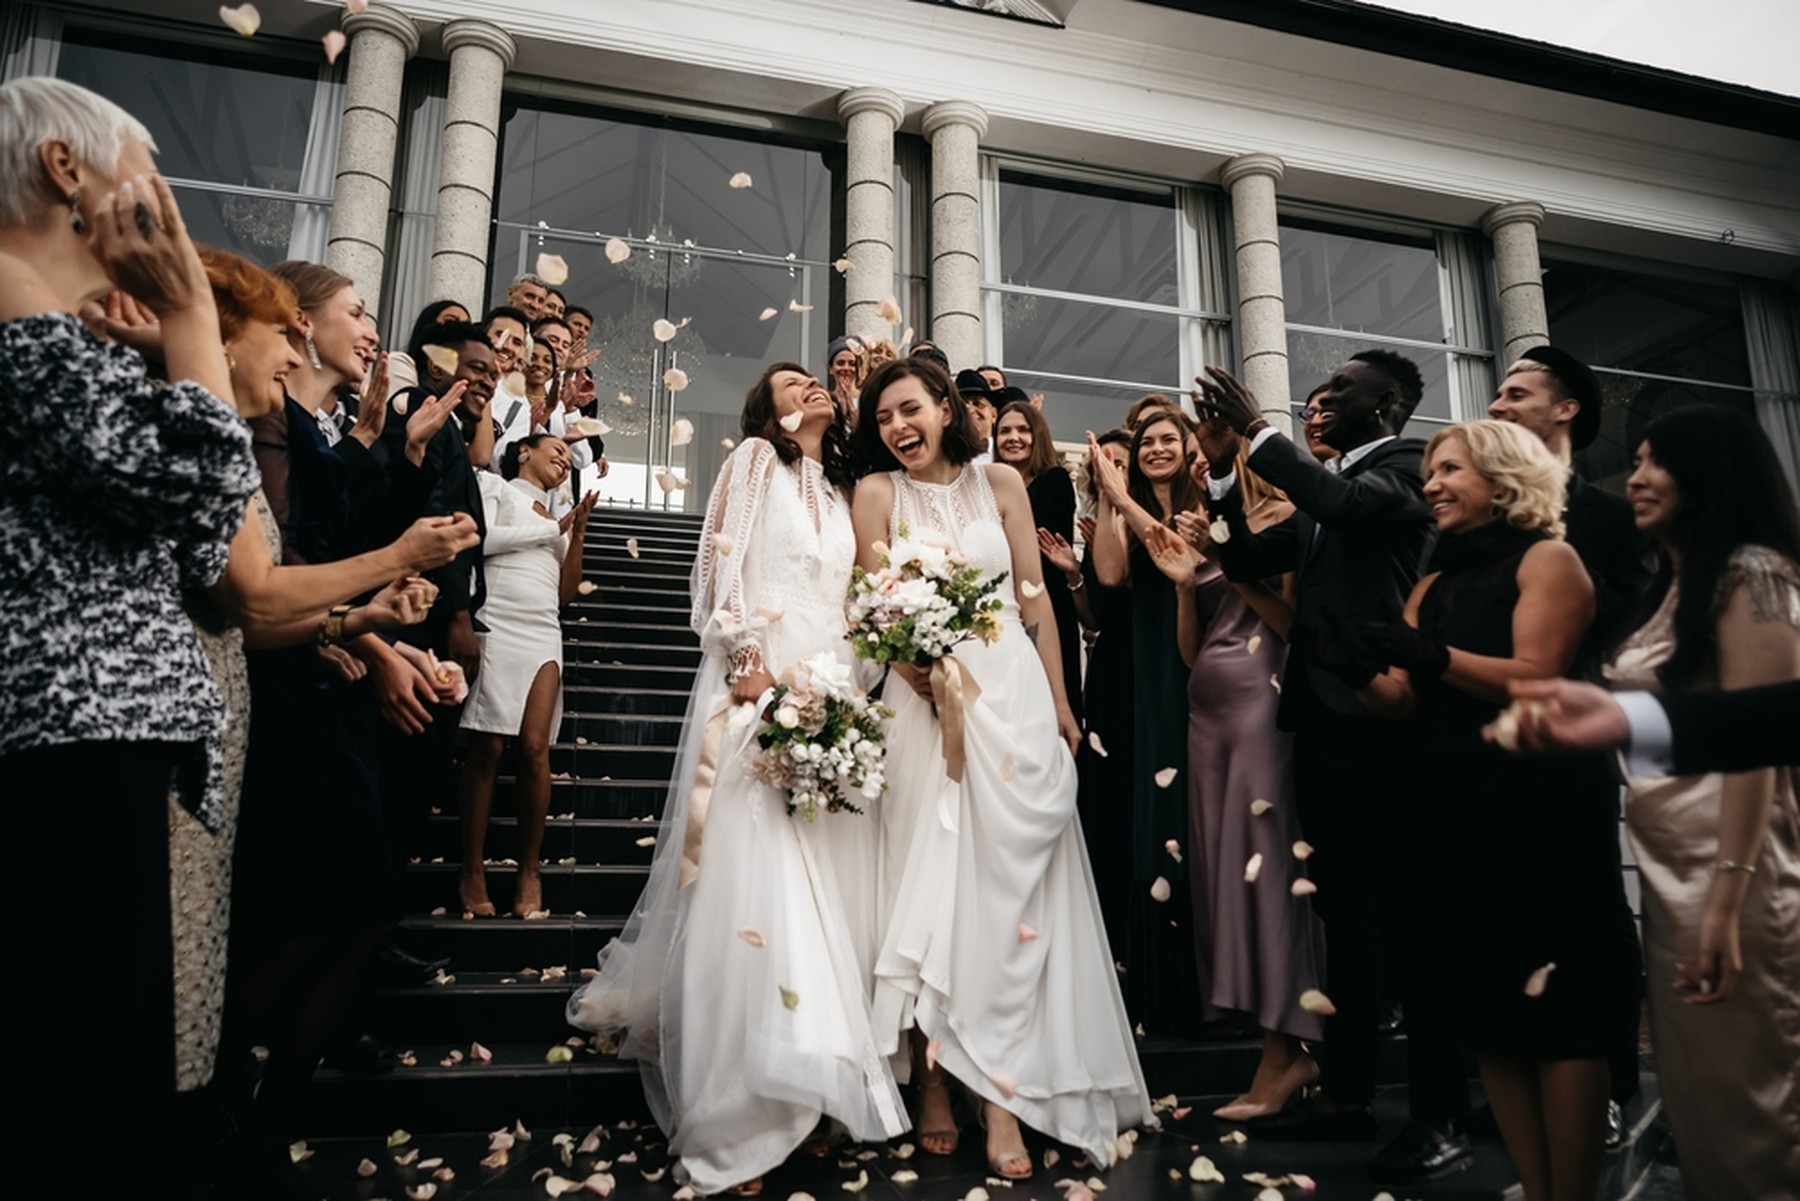 Dos mujeres jóvenes vestidas de novia saliendo de un edificio tras casarse. Los invitados les están lanzando pétalos de rosas rosas.